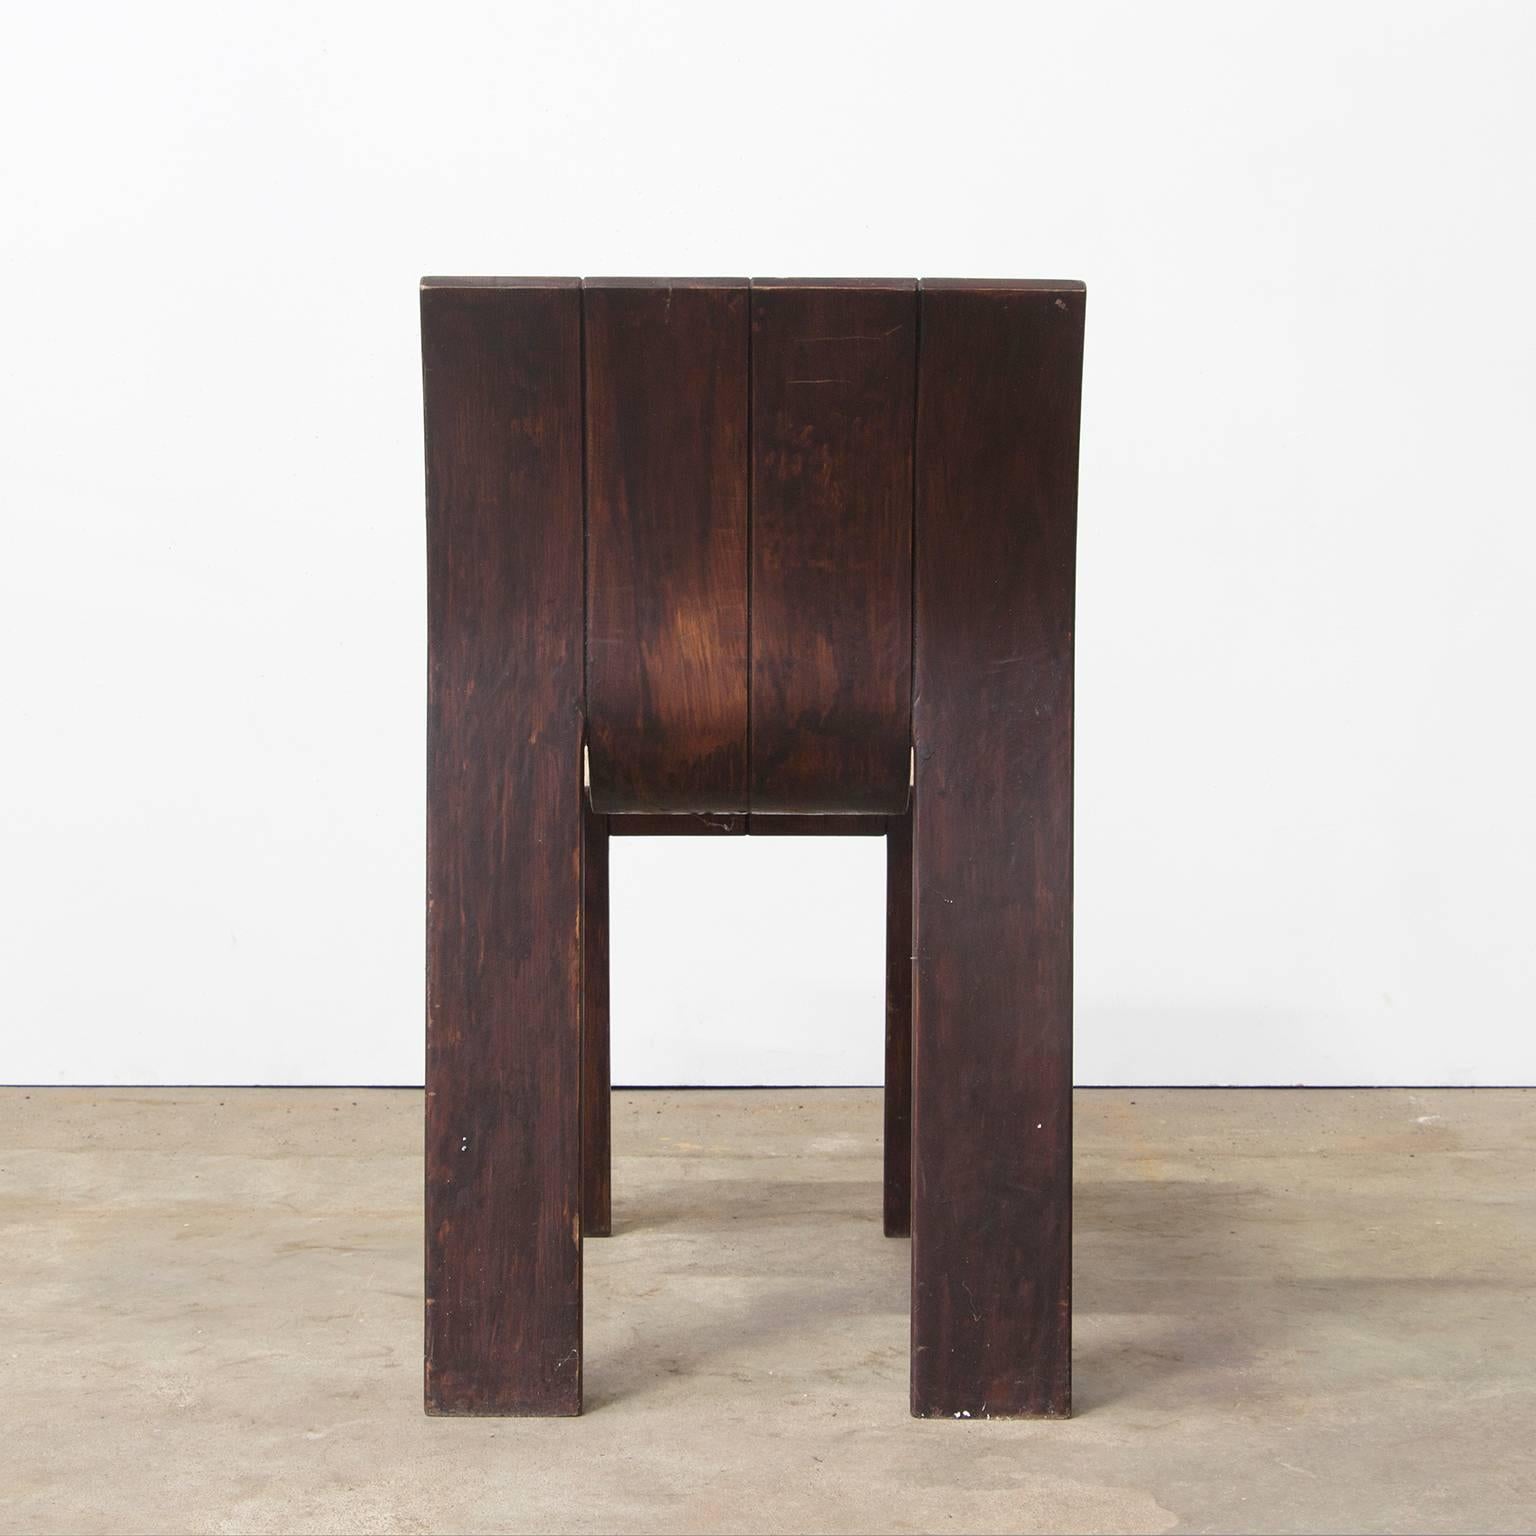 1974, Gijs Bakker, Castelijn, teilweise lackierter stapelbarer Stuhl mit gebogenen Holzstreifen, 1974 (Niederländisch)